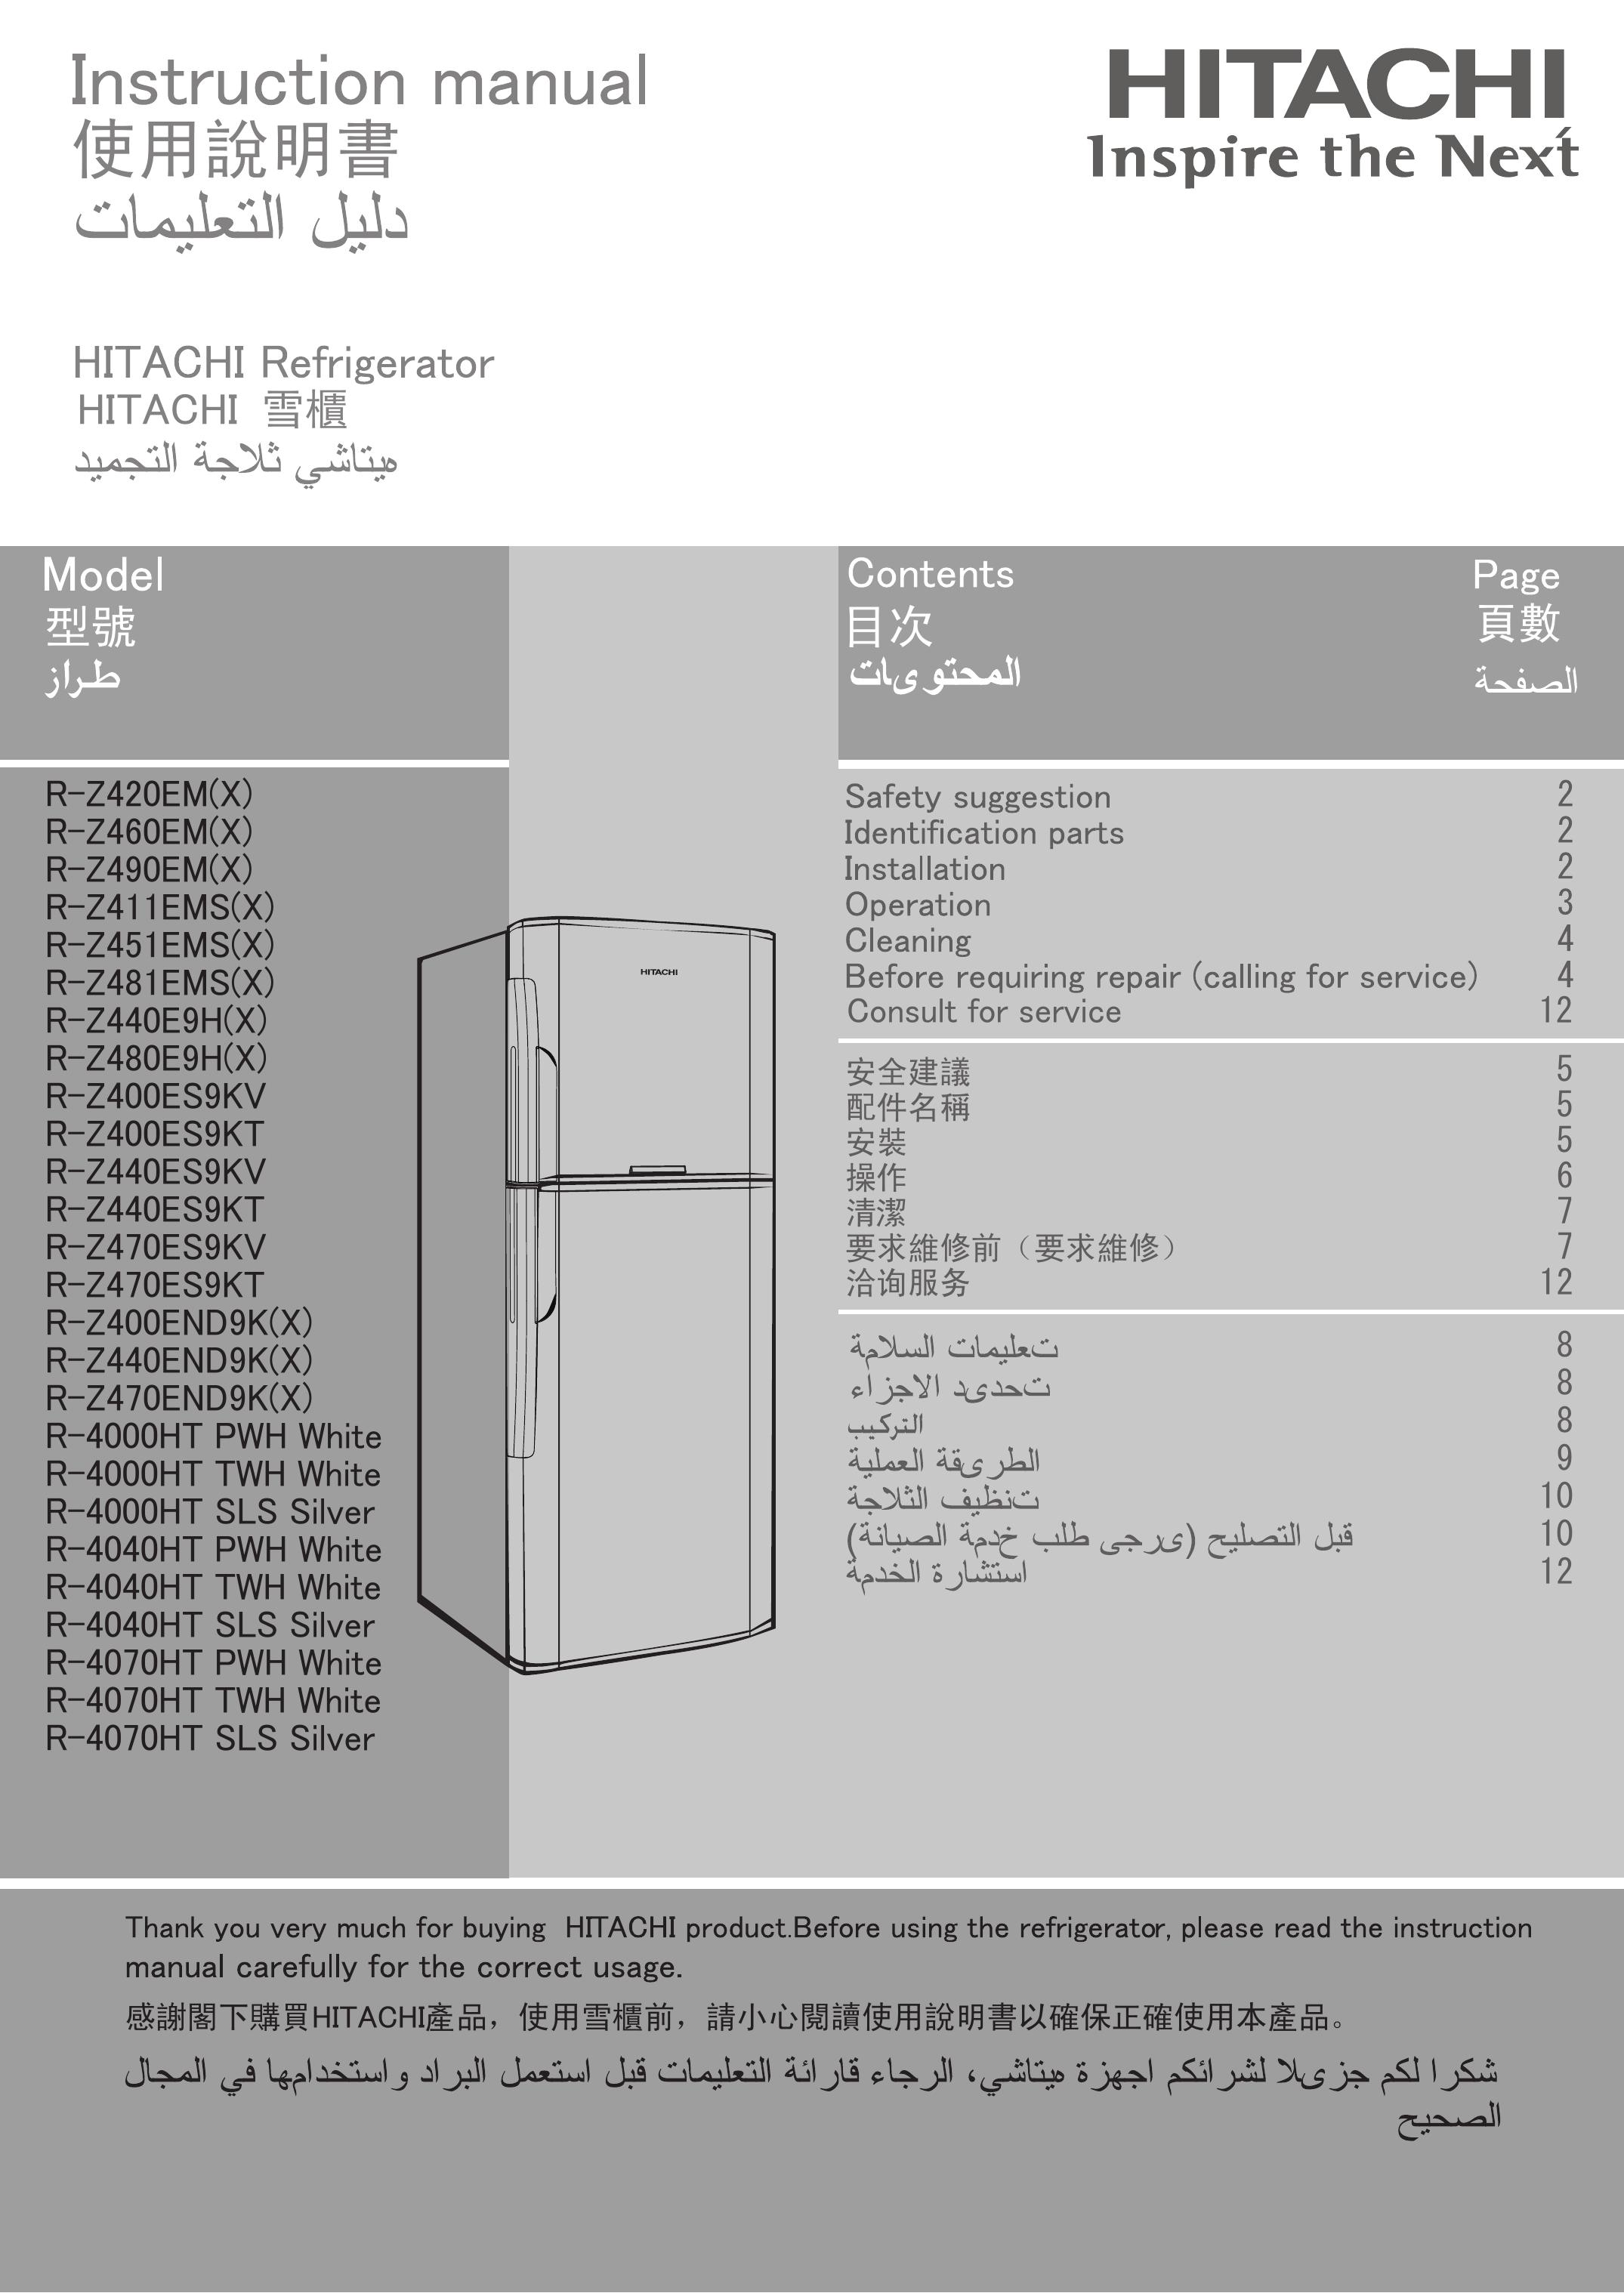 Hitachi R-4070HT SLS Silver Refrigerator User Manual